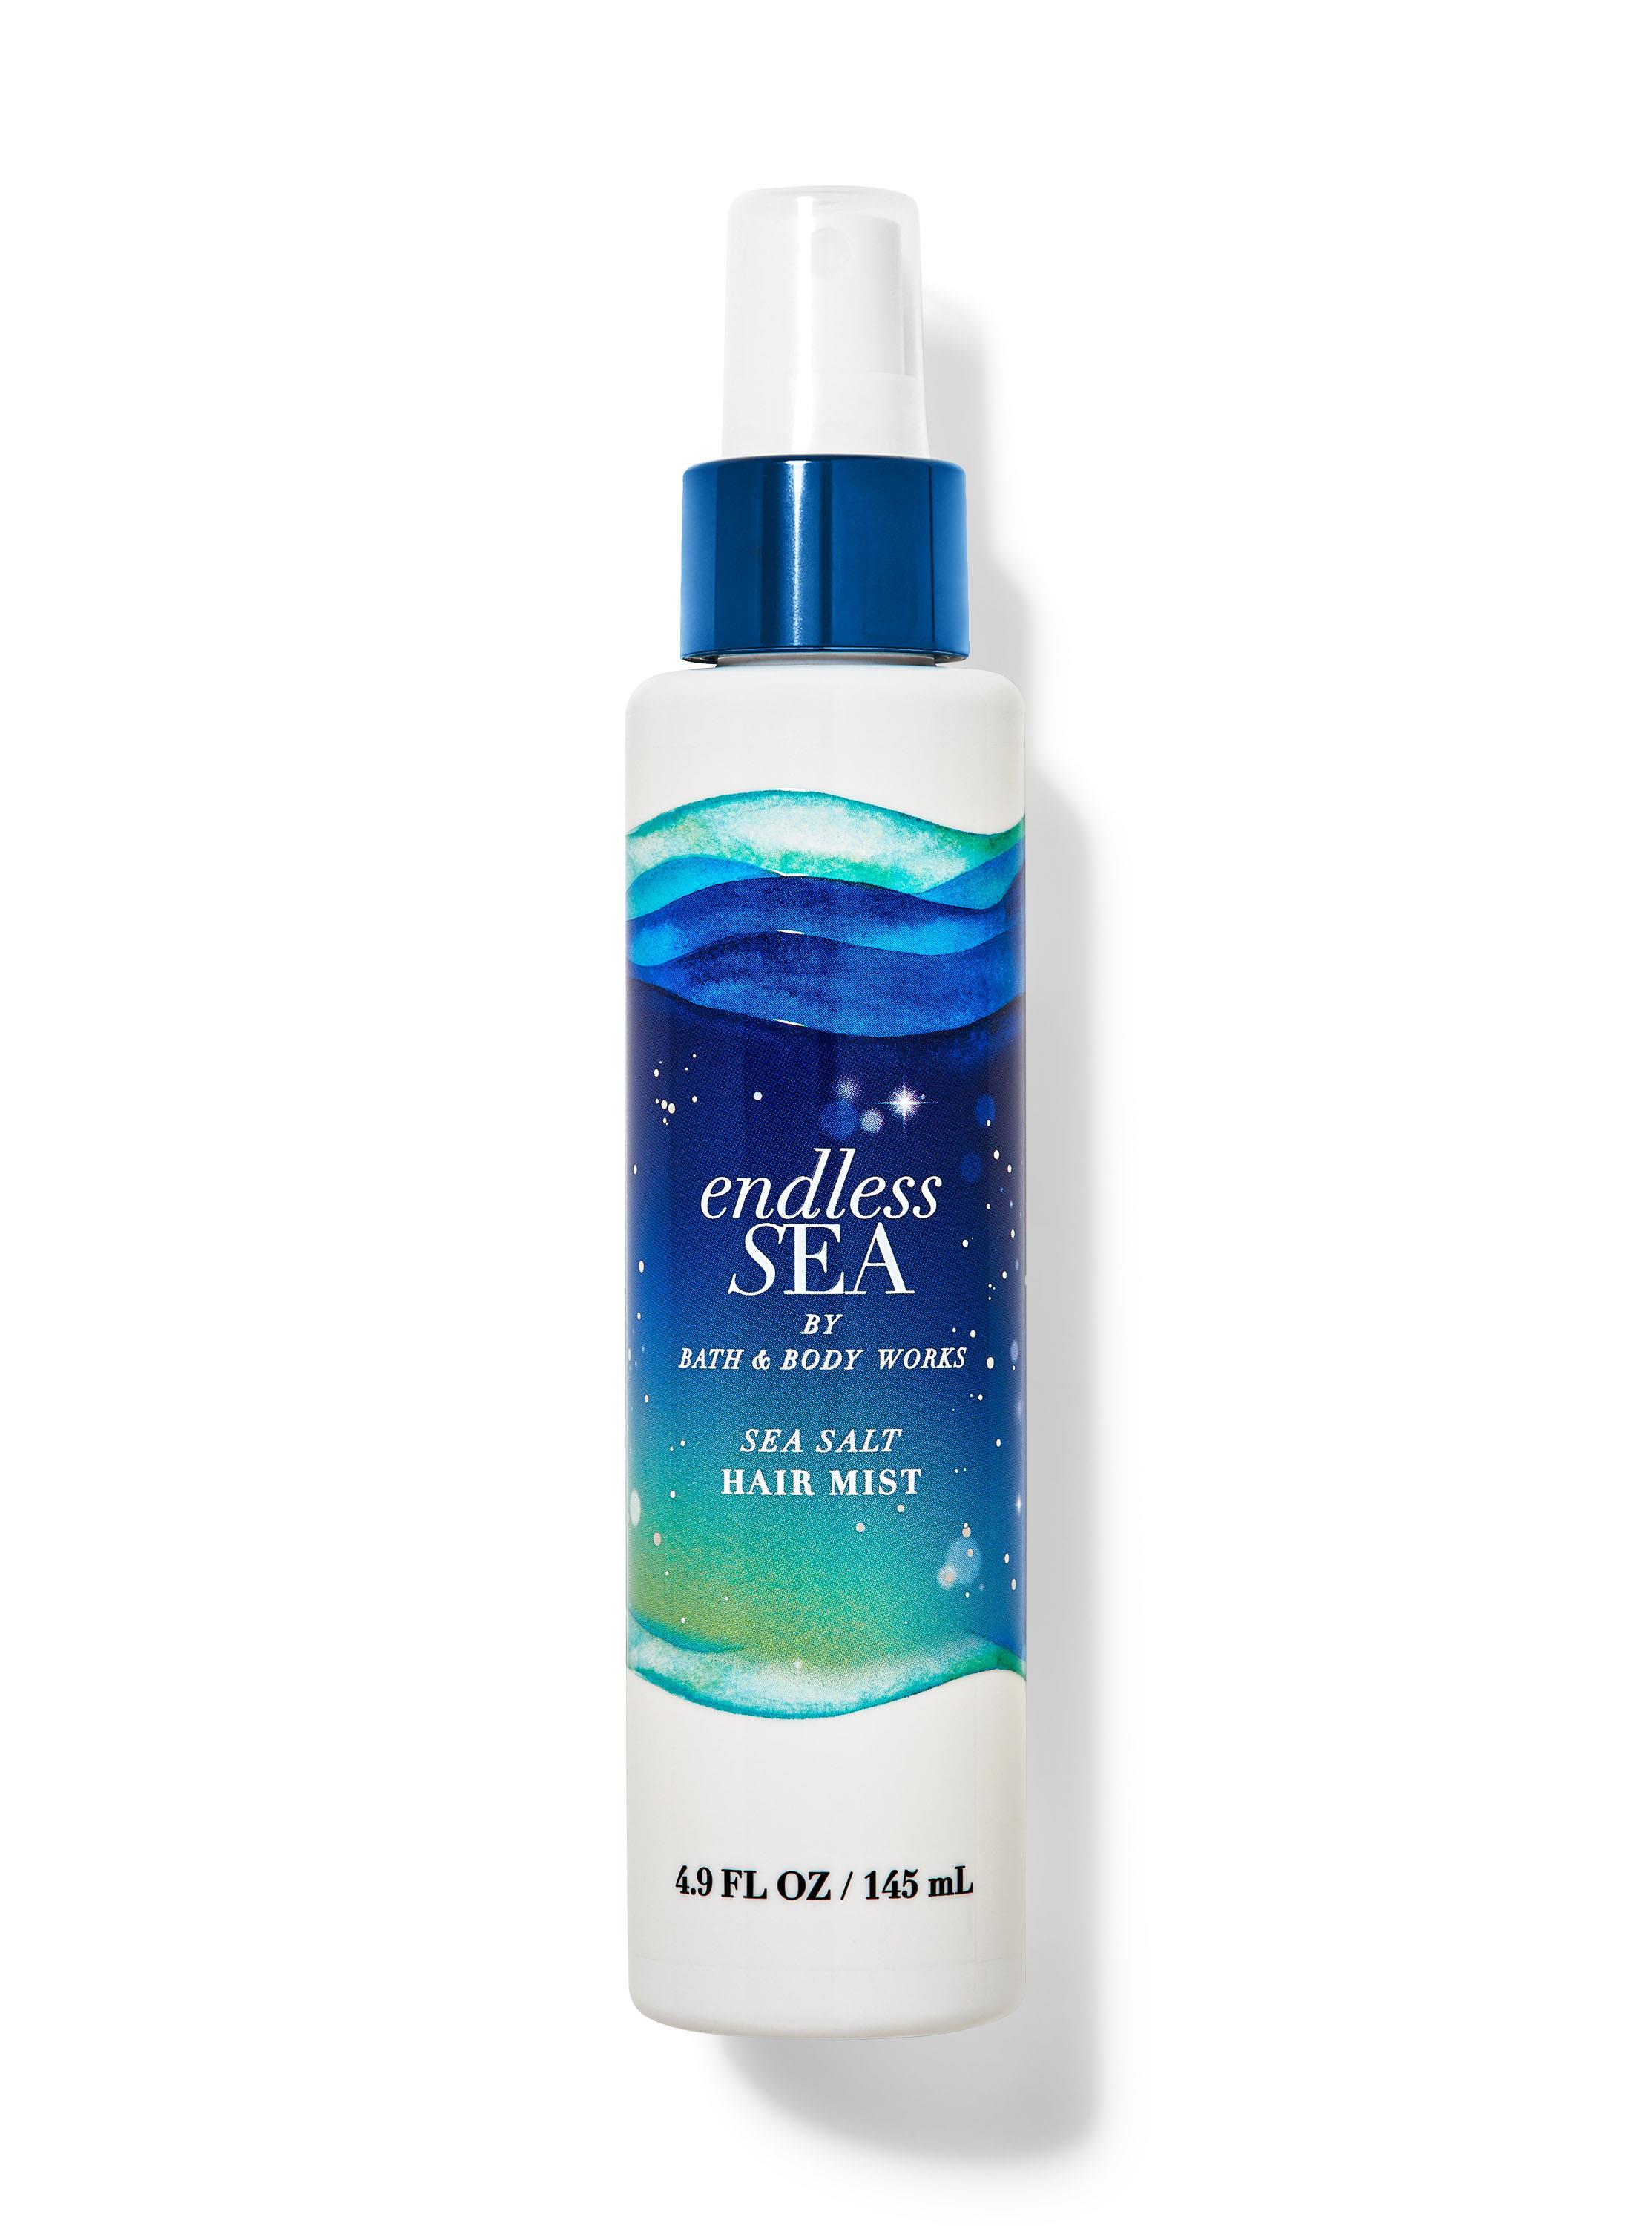 ENDLESS SEA - Deniz Tuzlu Saç Spreyi | Bath & Body Works